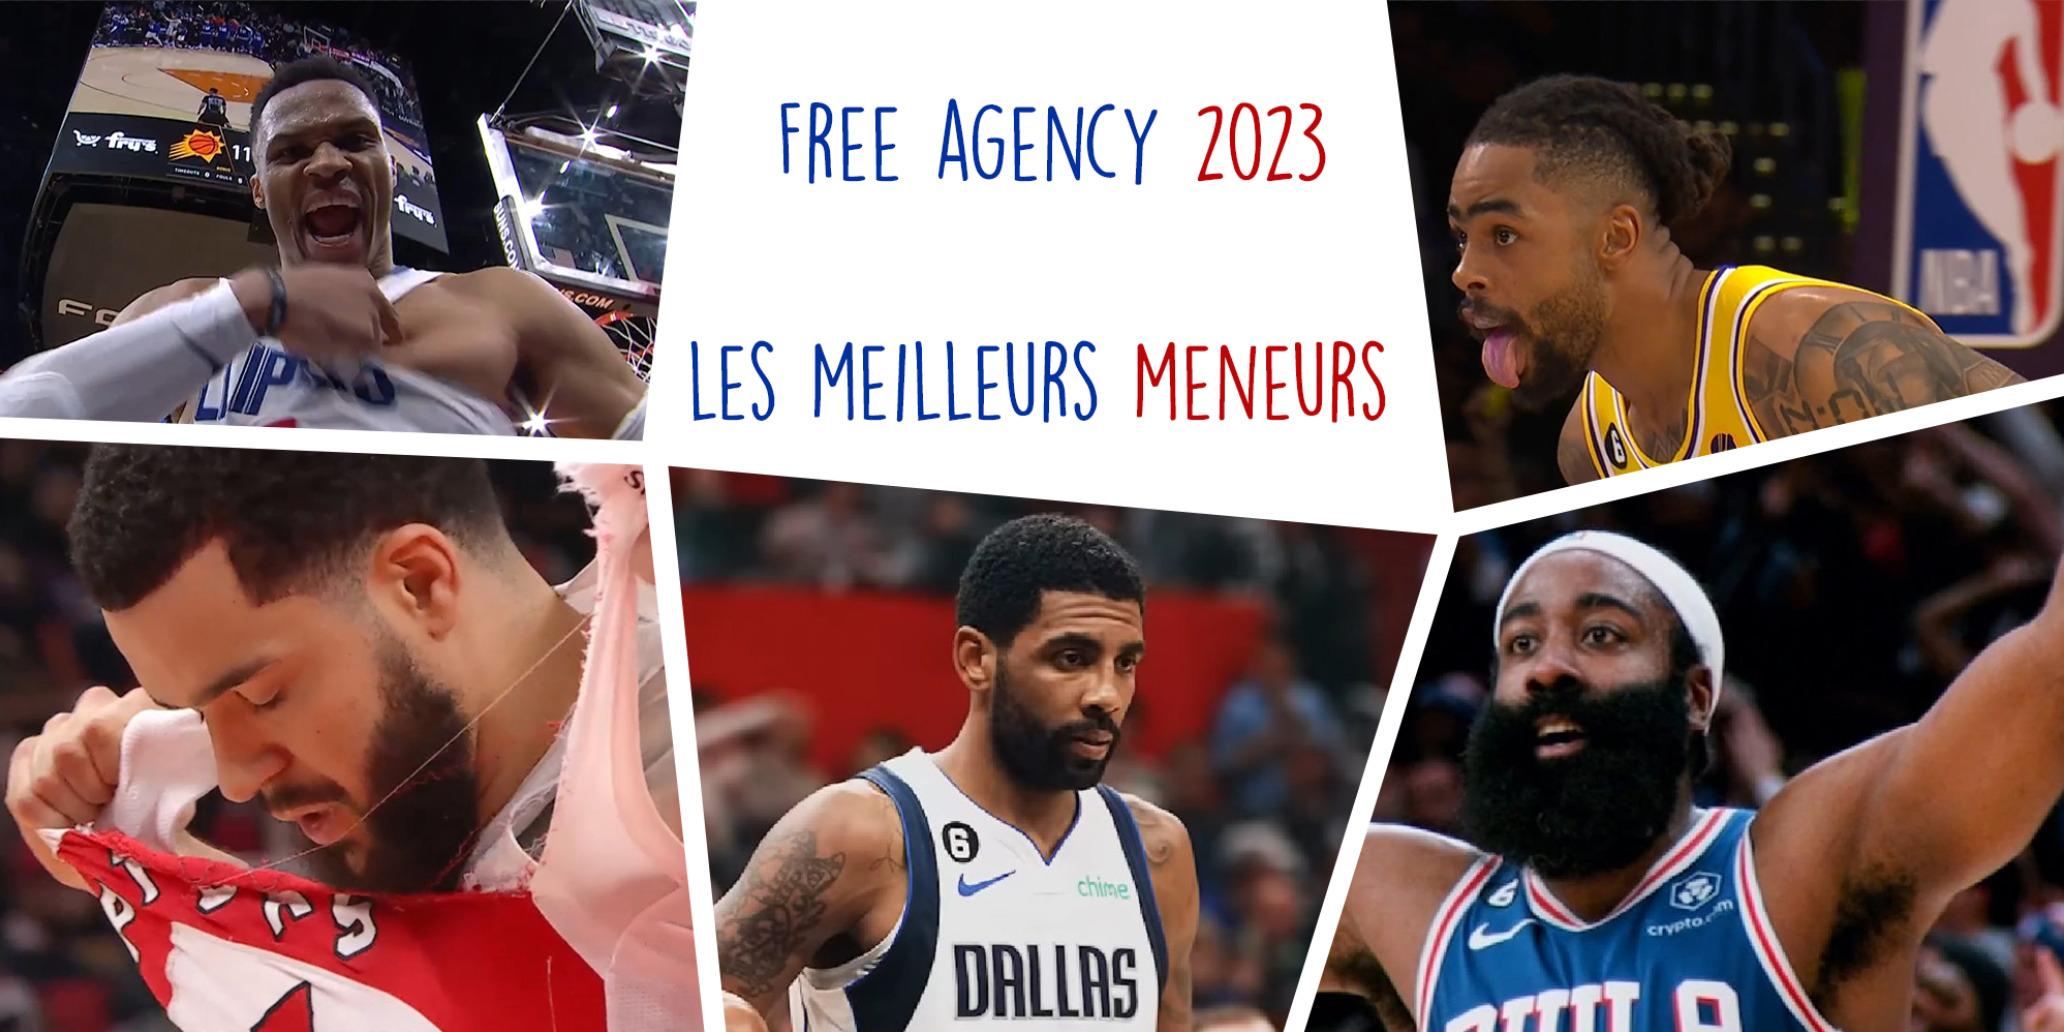 Free Agency Meneurs 2023